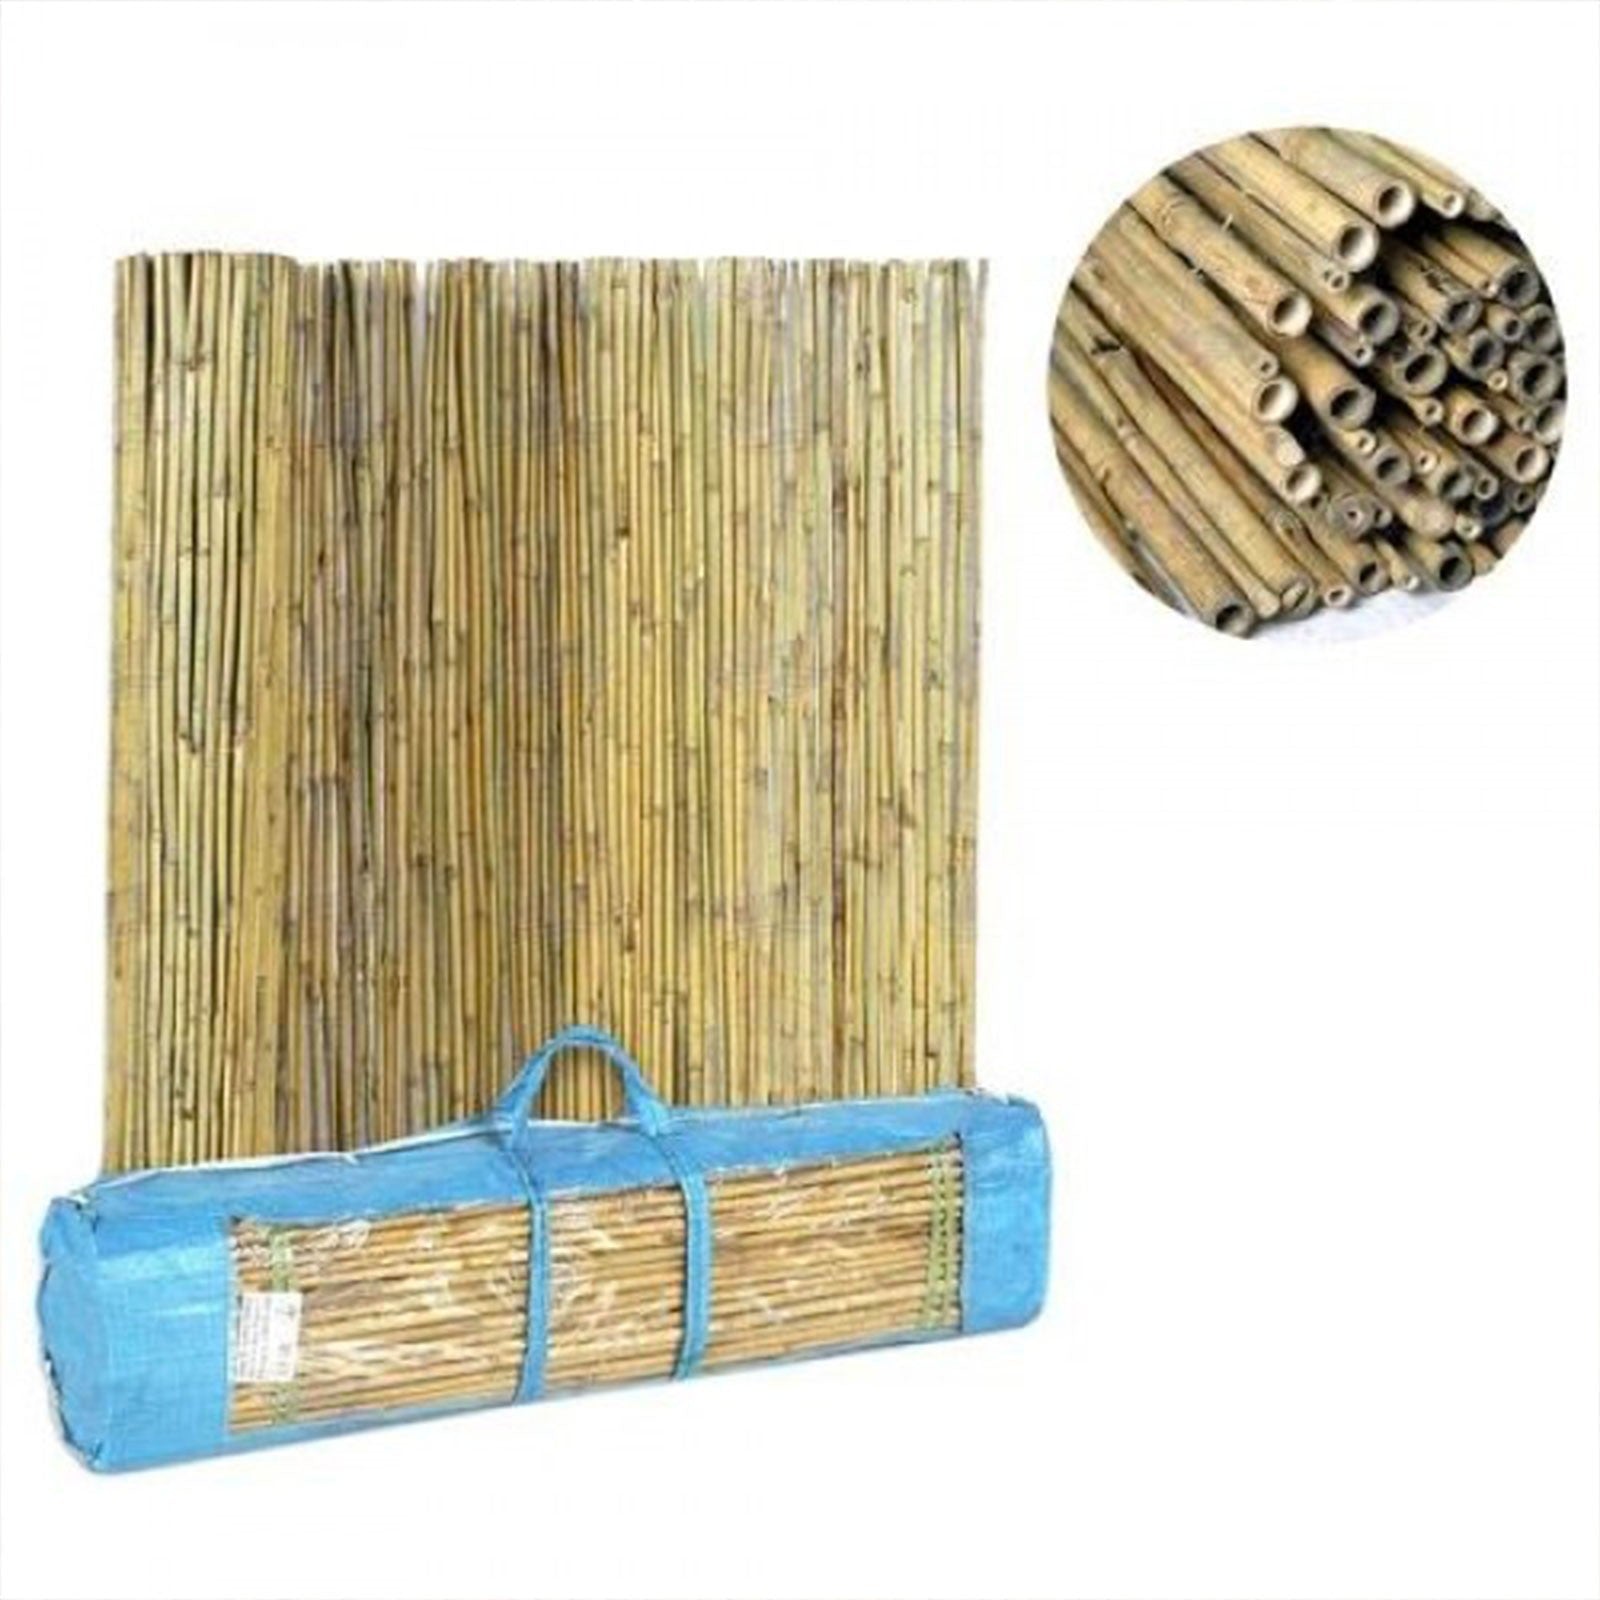 Arella in bambu per giardino con filo metallico pasante e valigetta in PVC